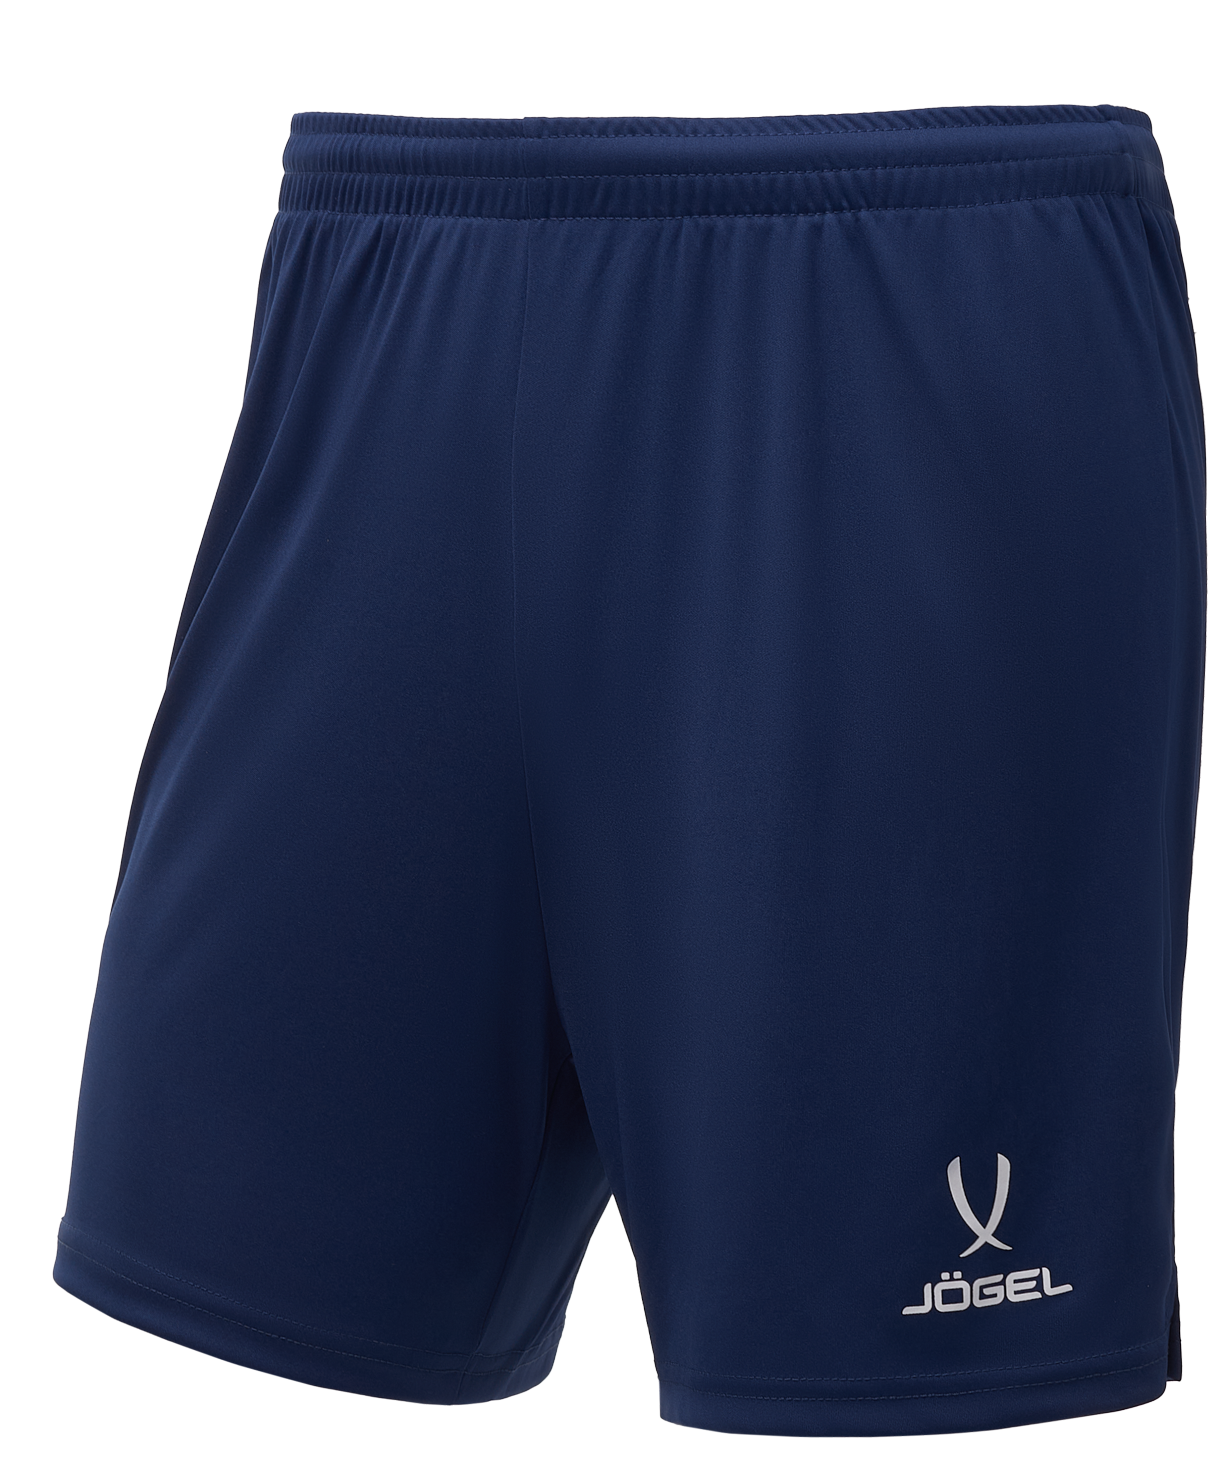 Шорты волейбольные  Jogel Camp, темно-синий, детский - XS шорты детские jogel camp woven shorts jc4sh0122 z4 k темно синий 128